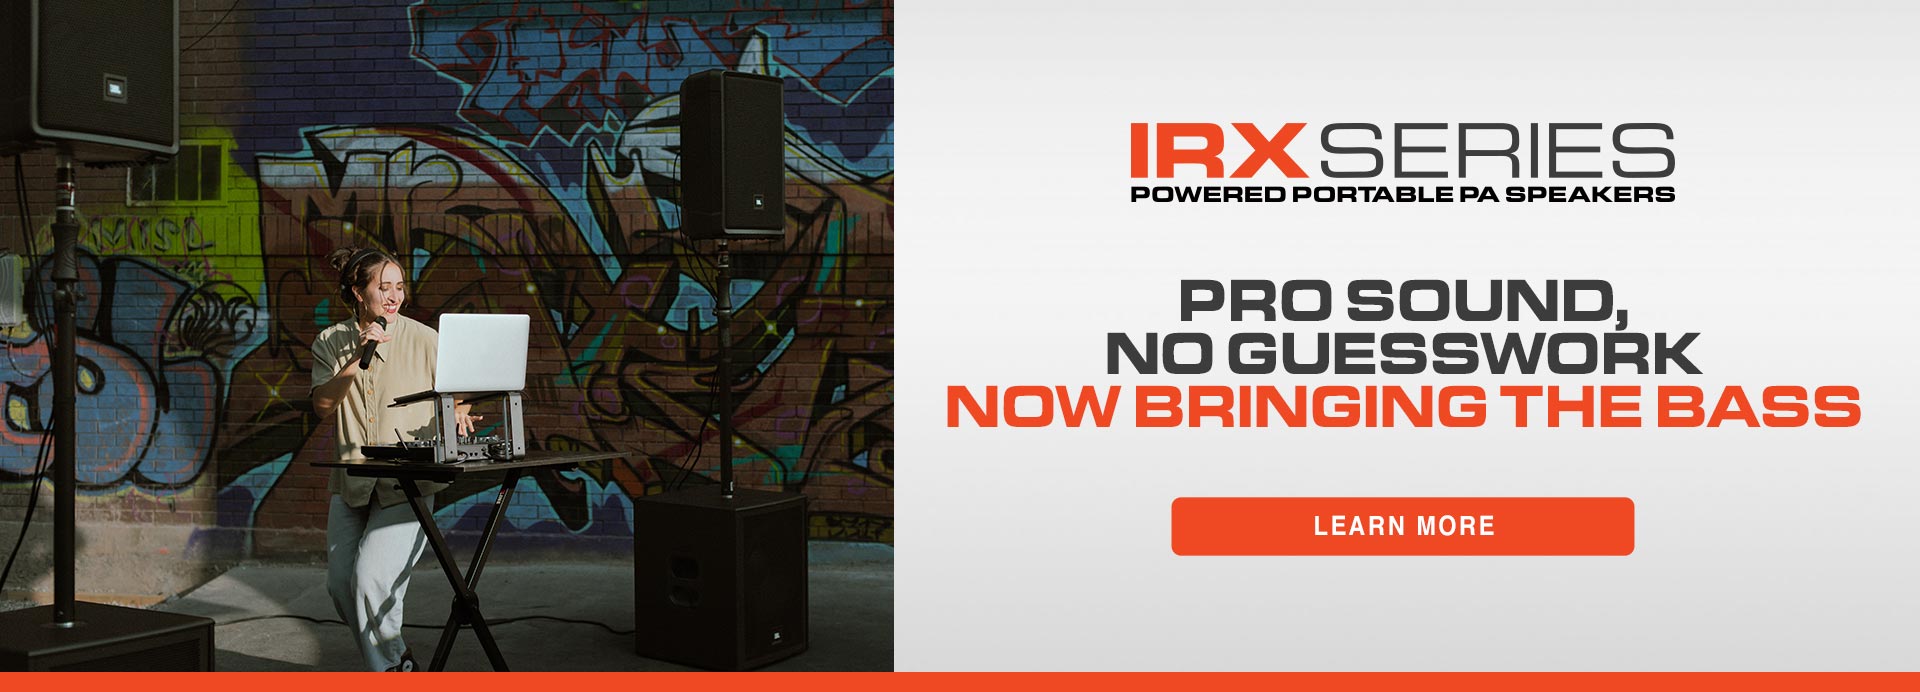 IRX launch - homepage